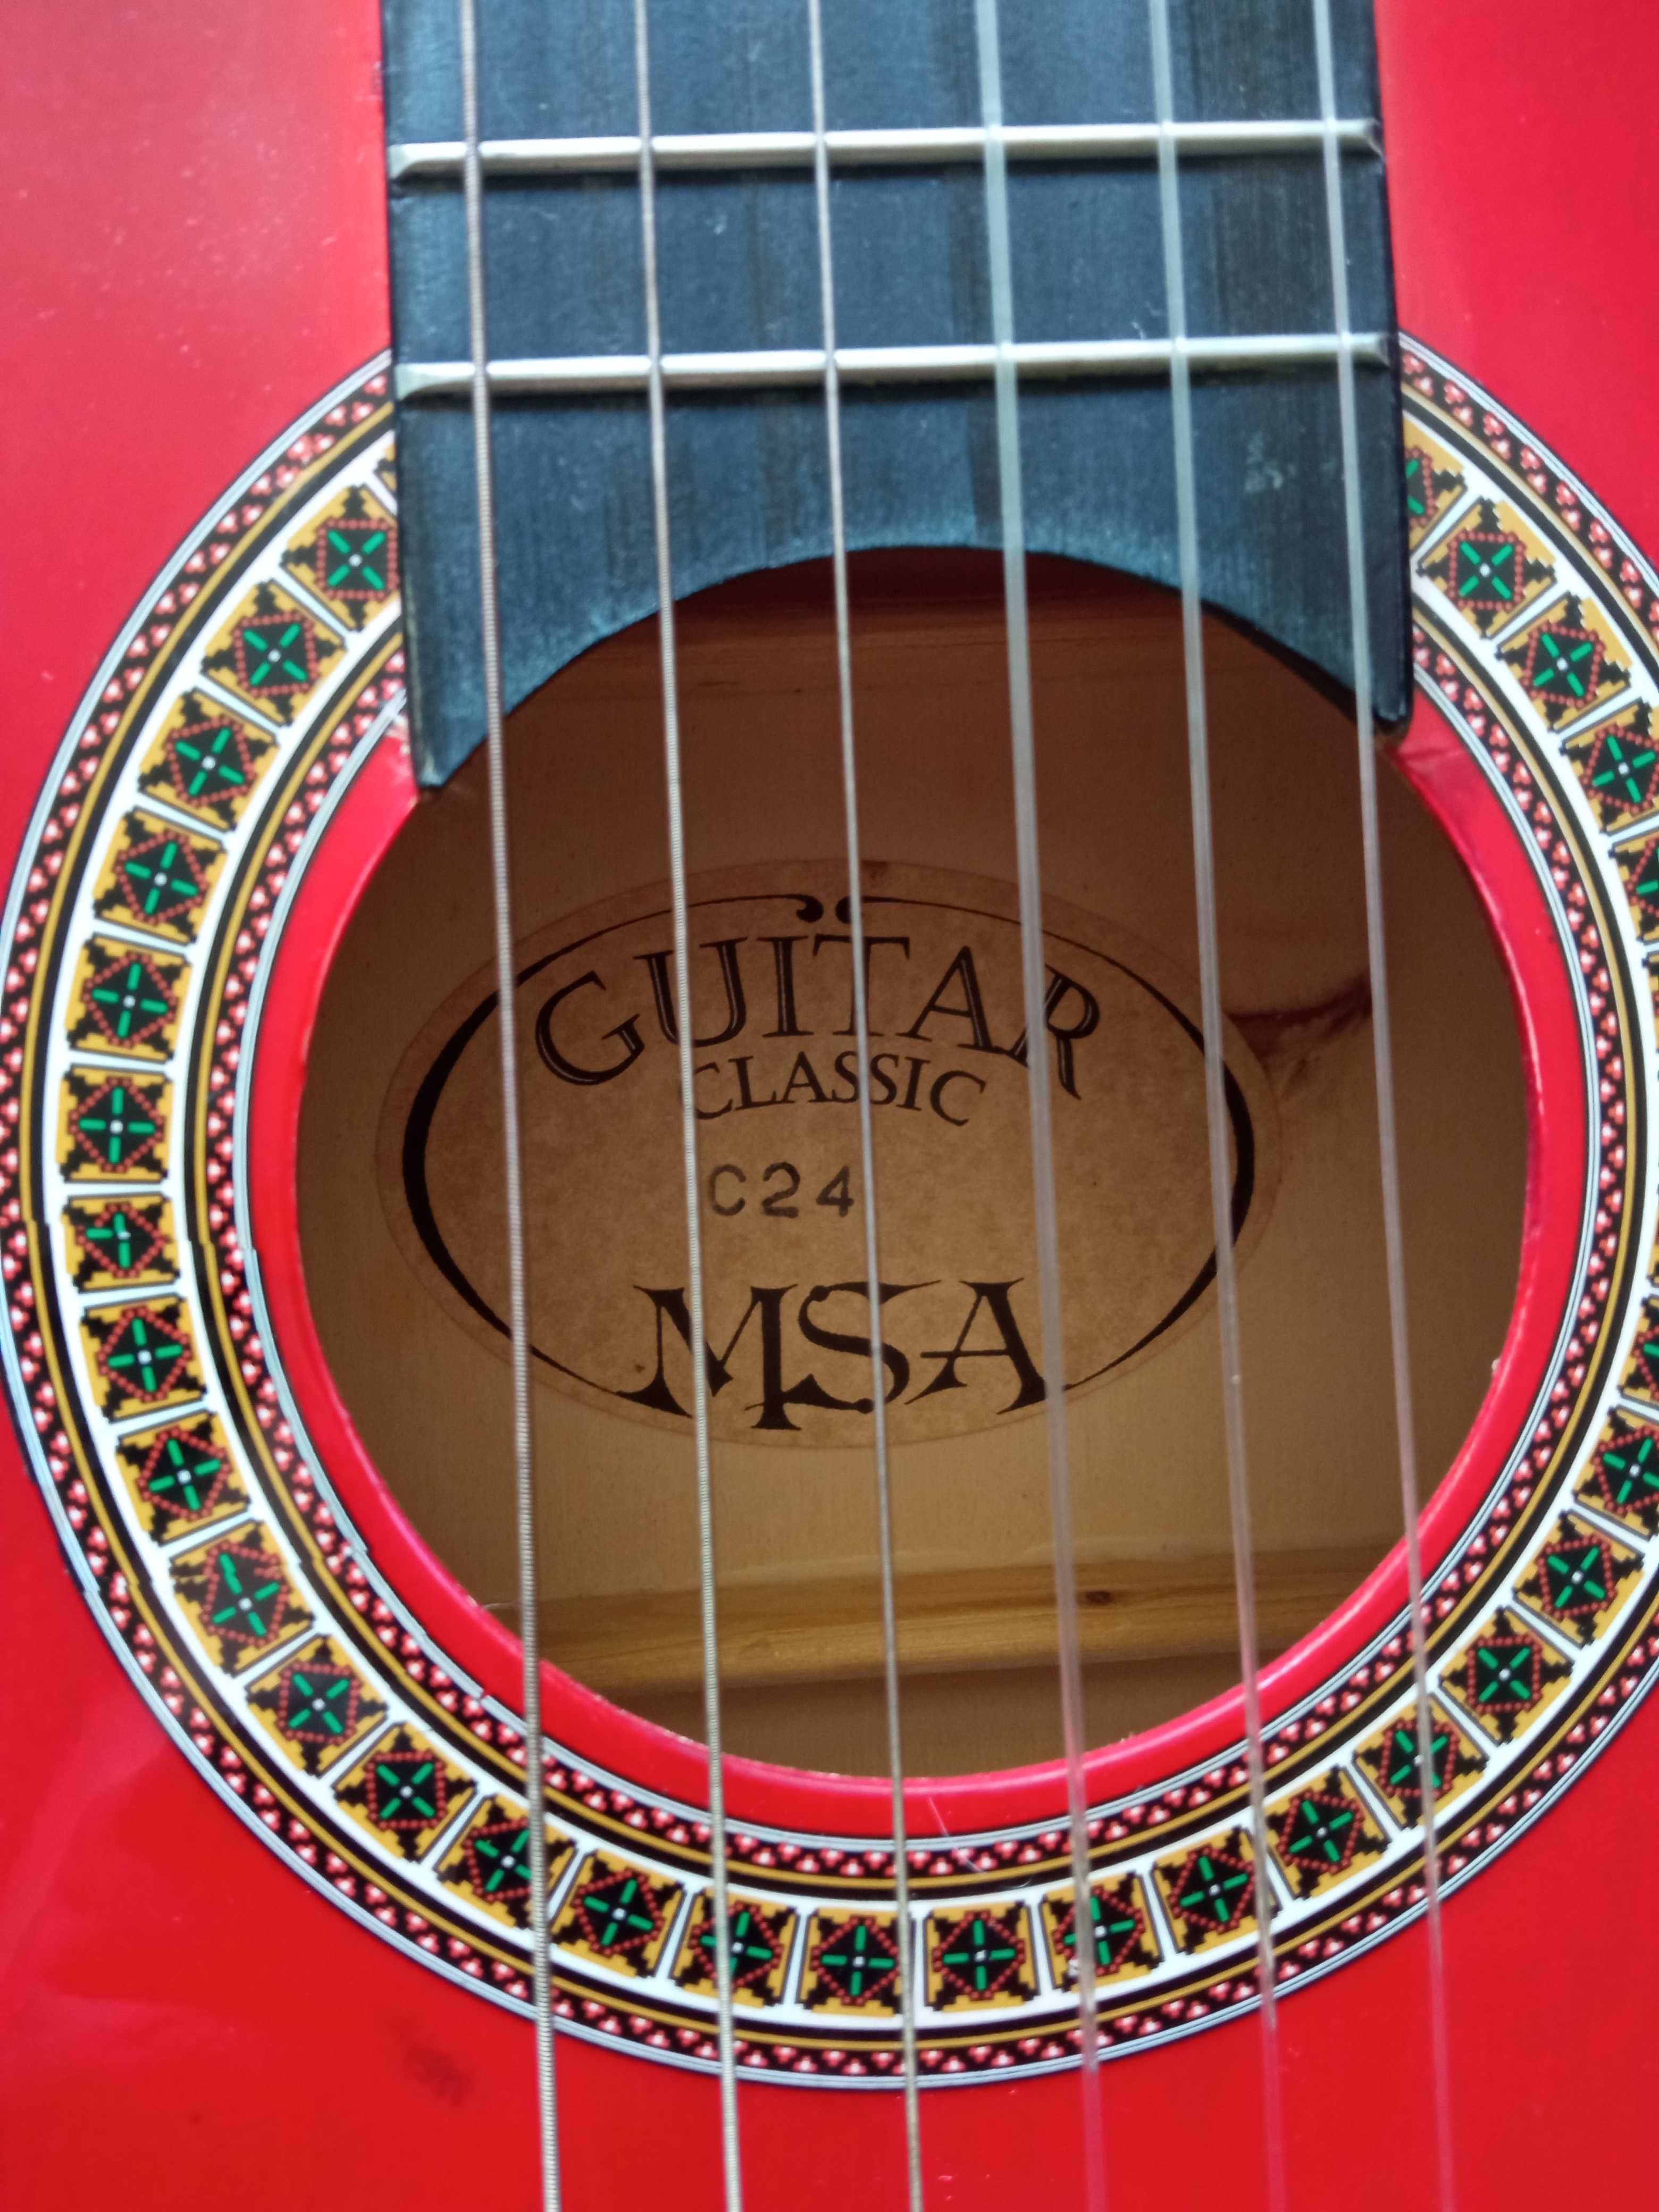 Gitara klasyczna MSA